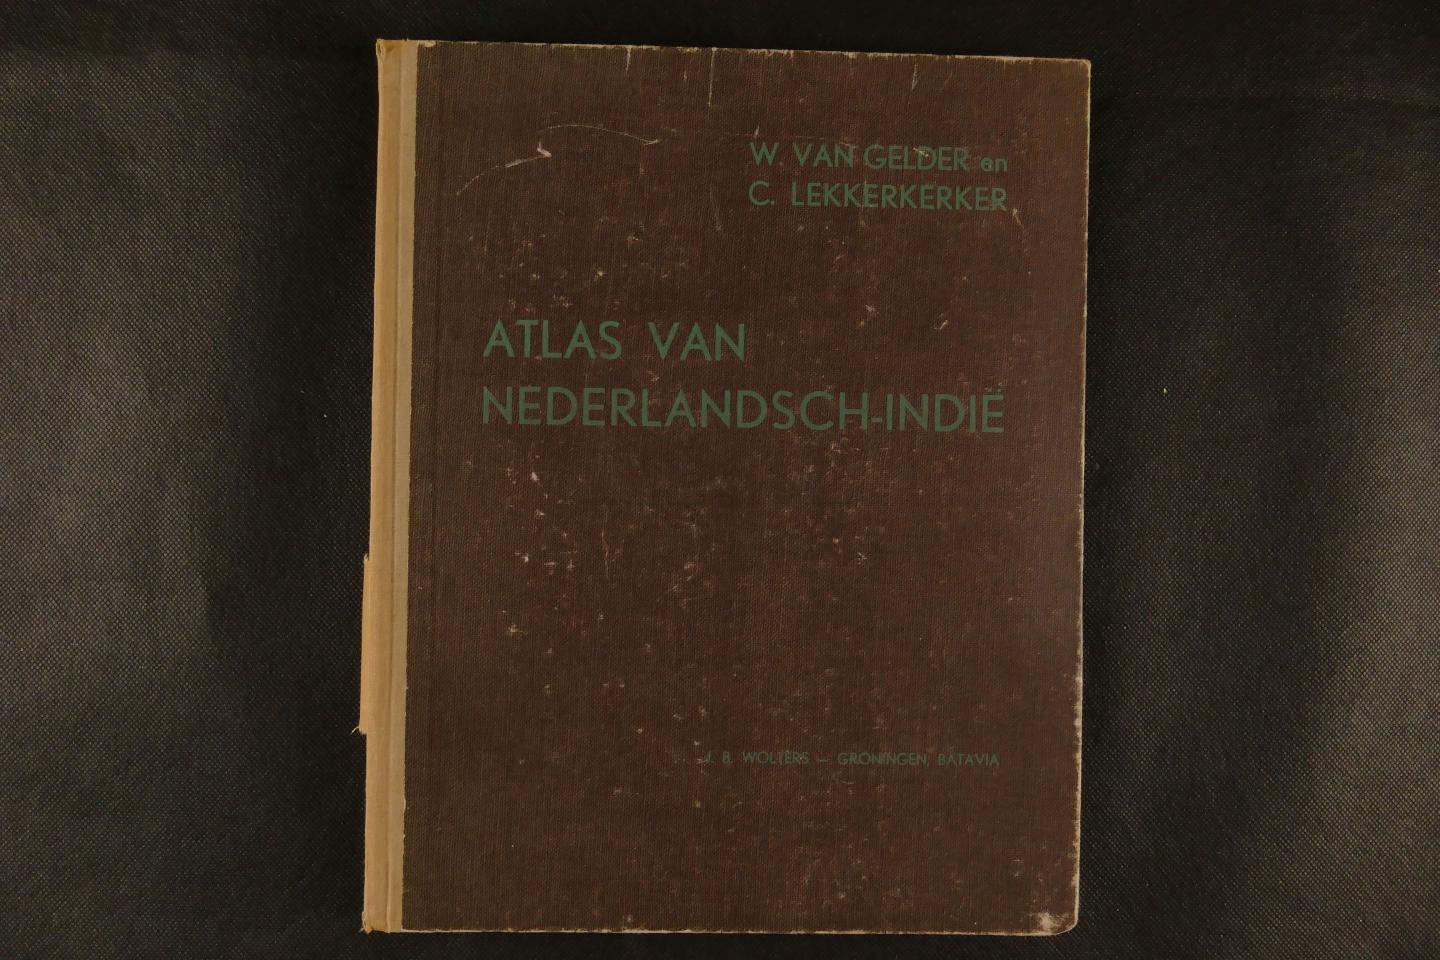 Gelder van, W. Lekkerkerker, C. - Atlas van Nederlandsch-Indie (10 foto's)